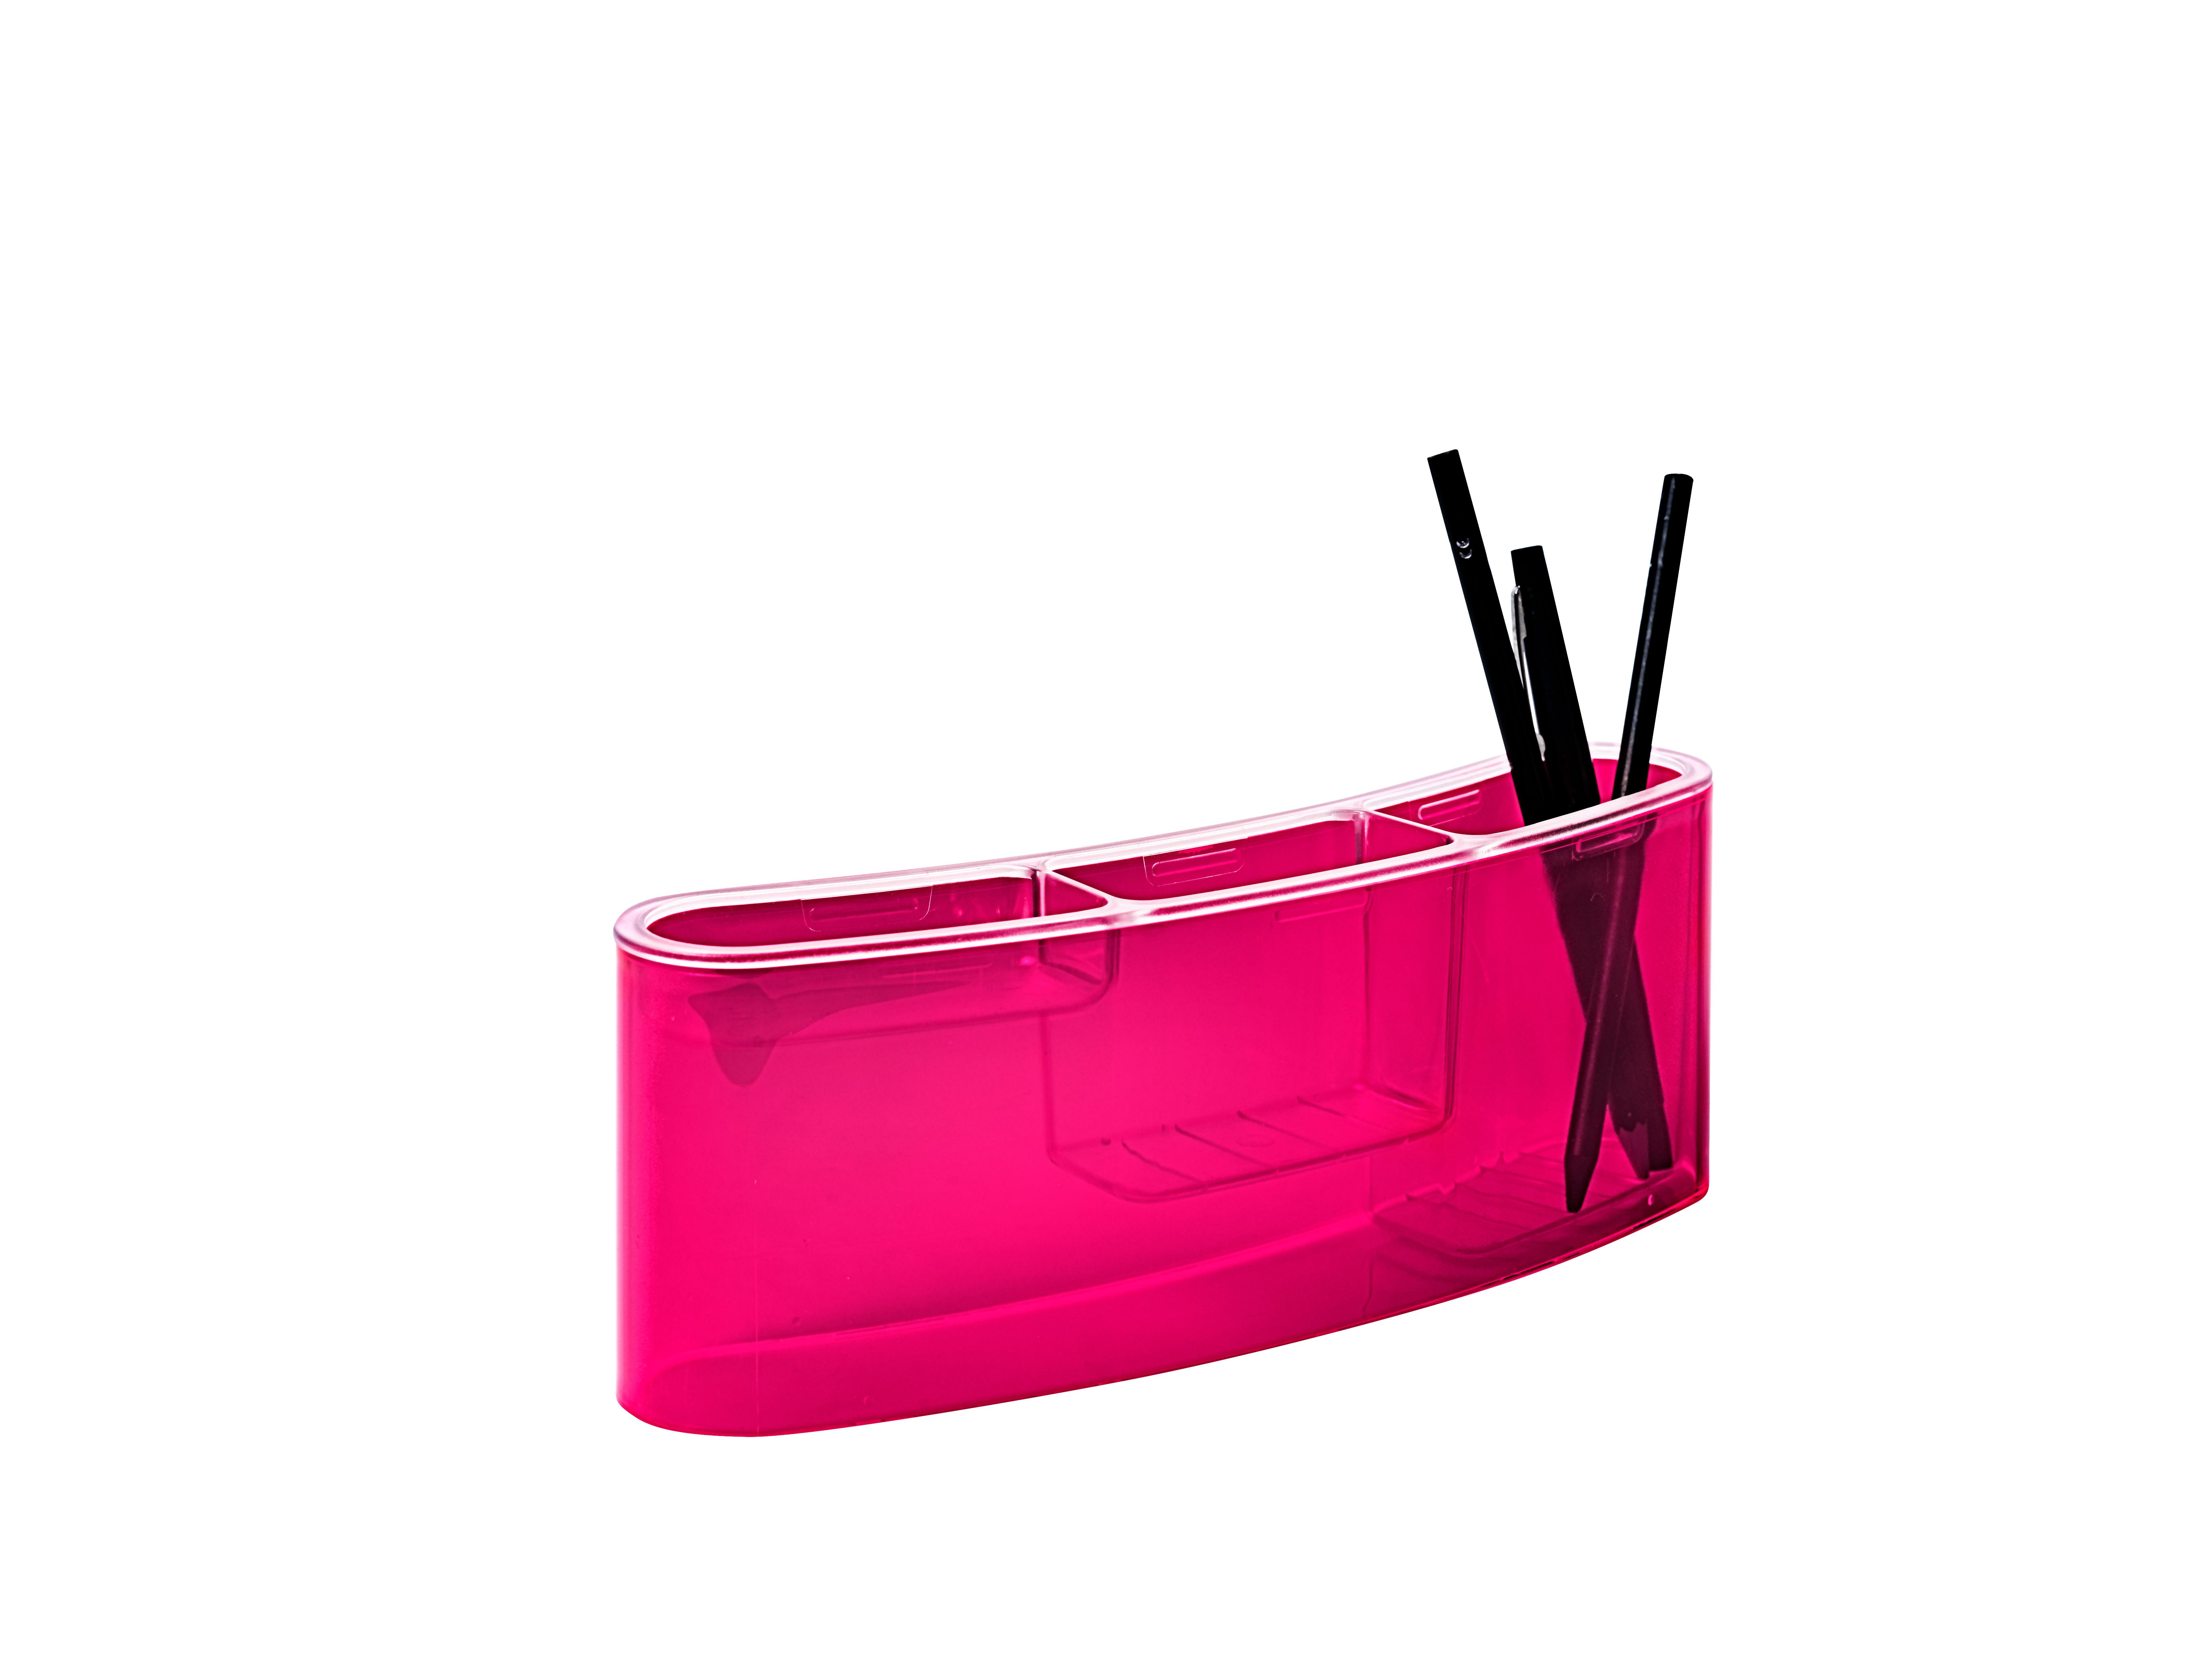 Styro office pen holderstyropen desk tidy NEONline, neon-pink  